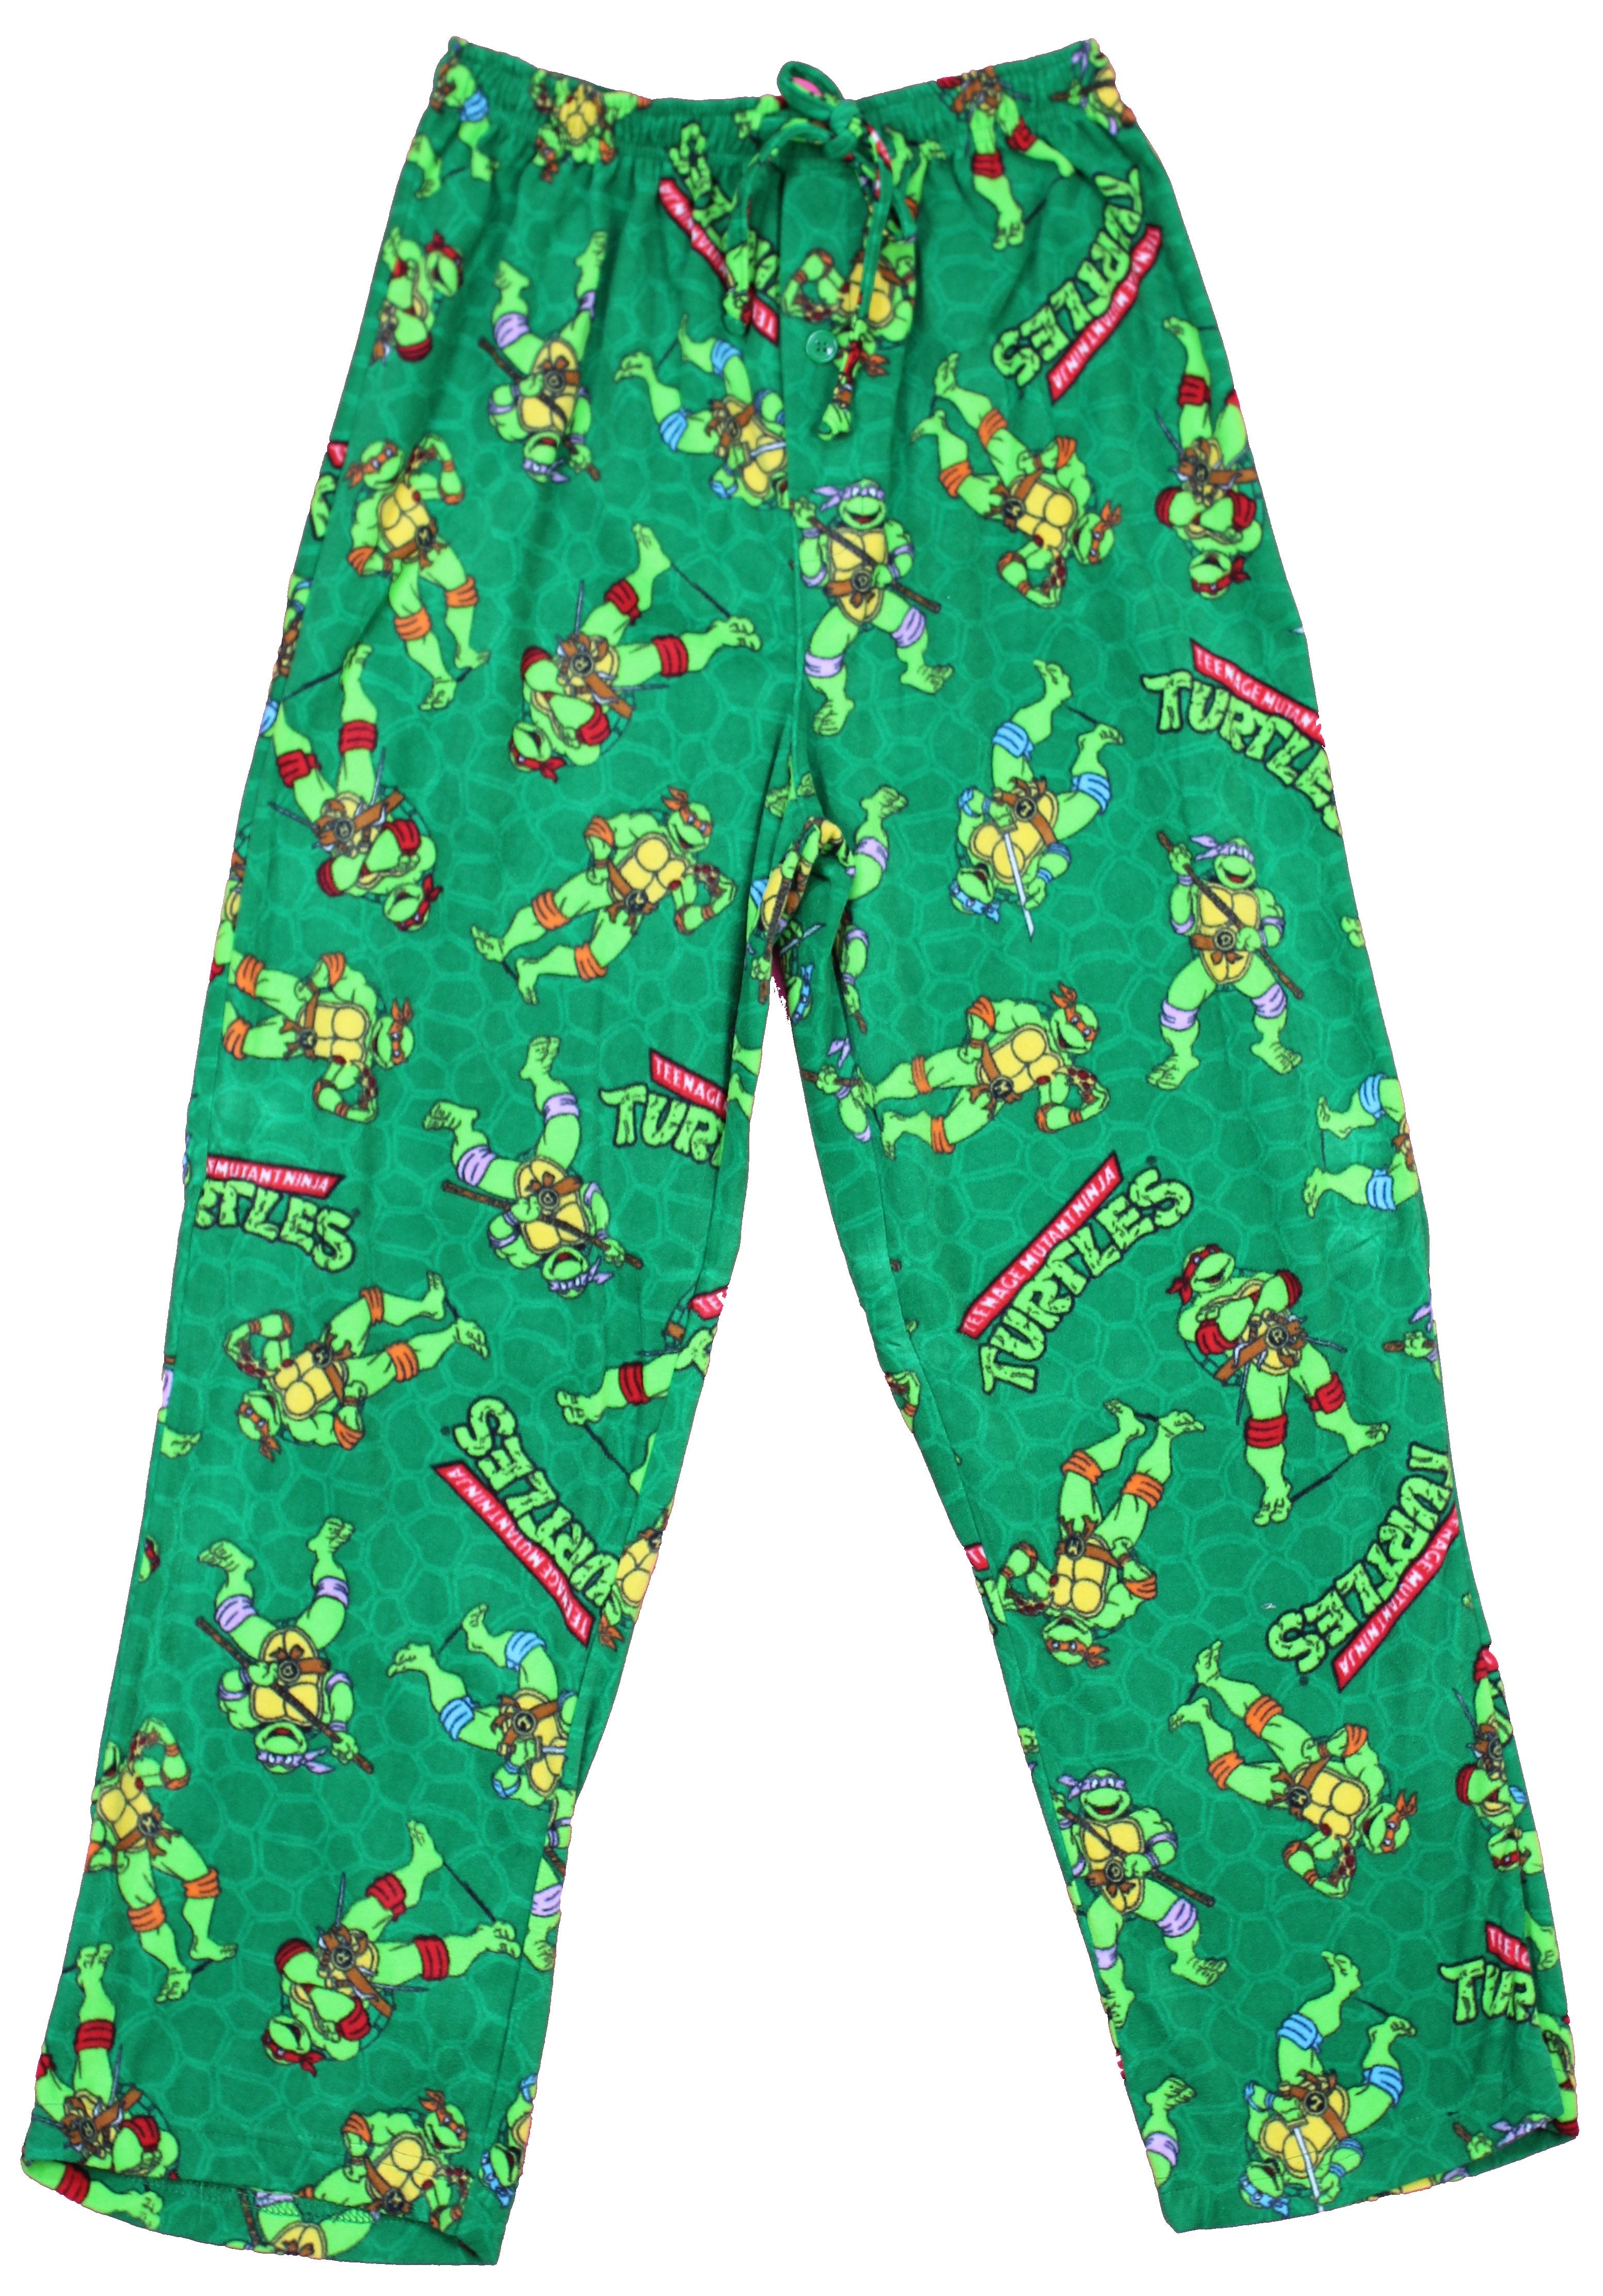 Teenage Mutant Ninja Turtles Pajamas